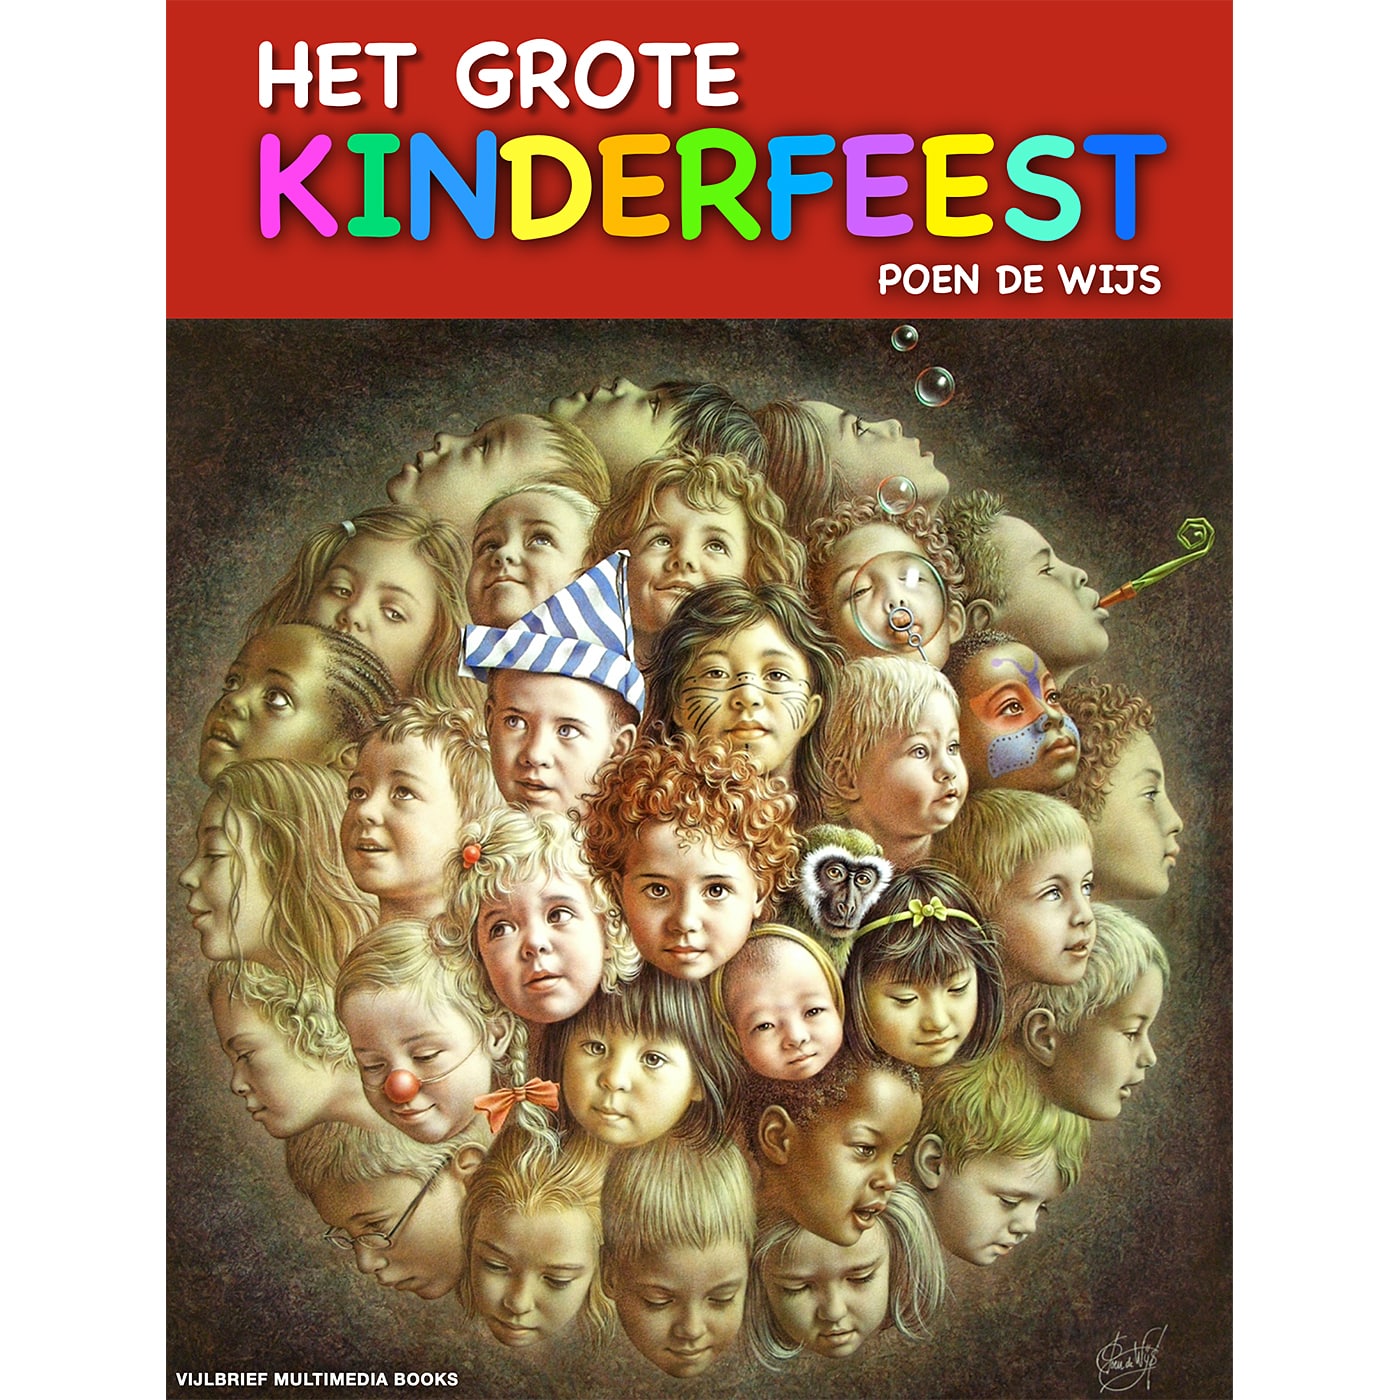 Het grote kinderfeest, digitaal boek met video, door Poen de Wijs